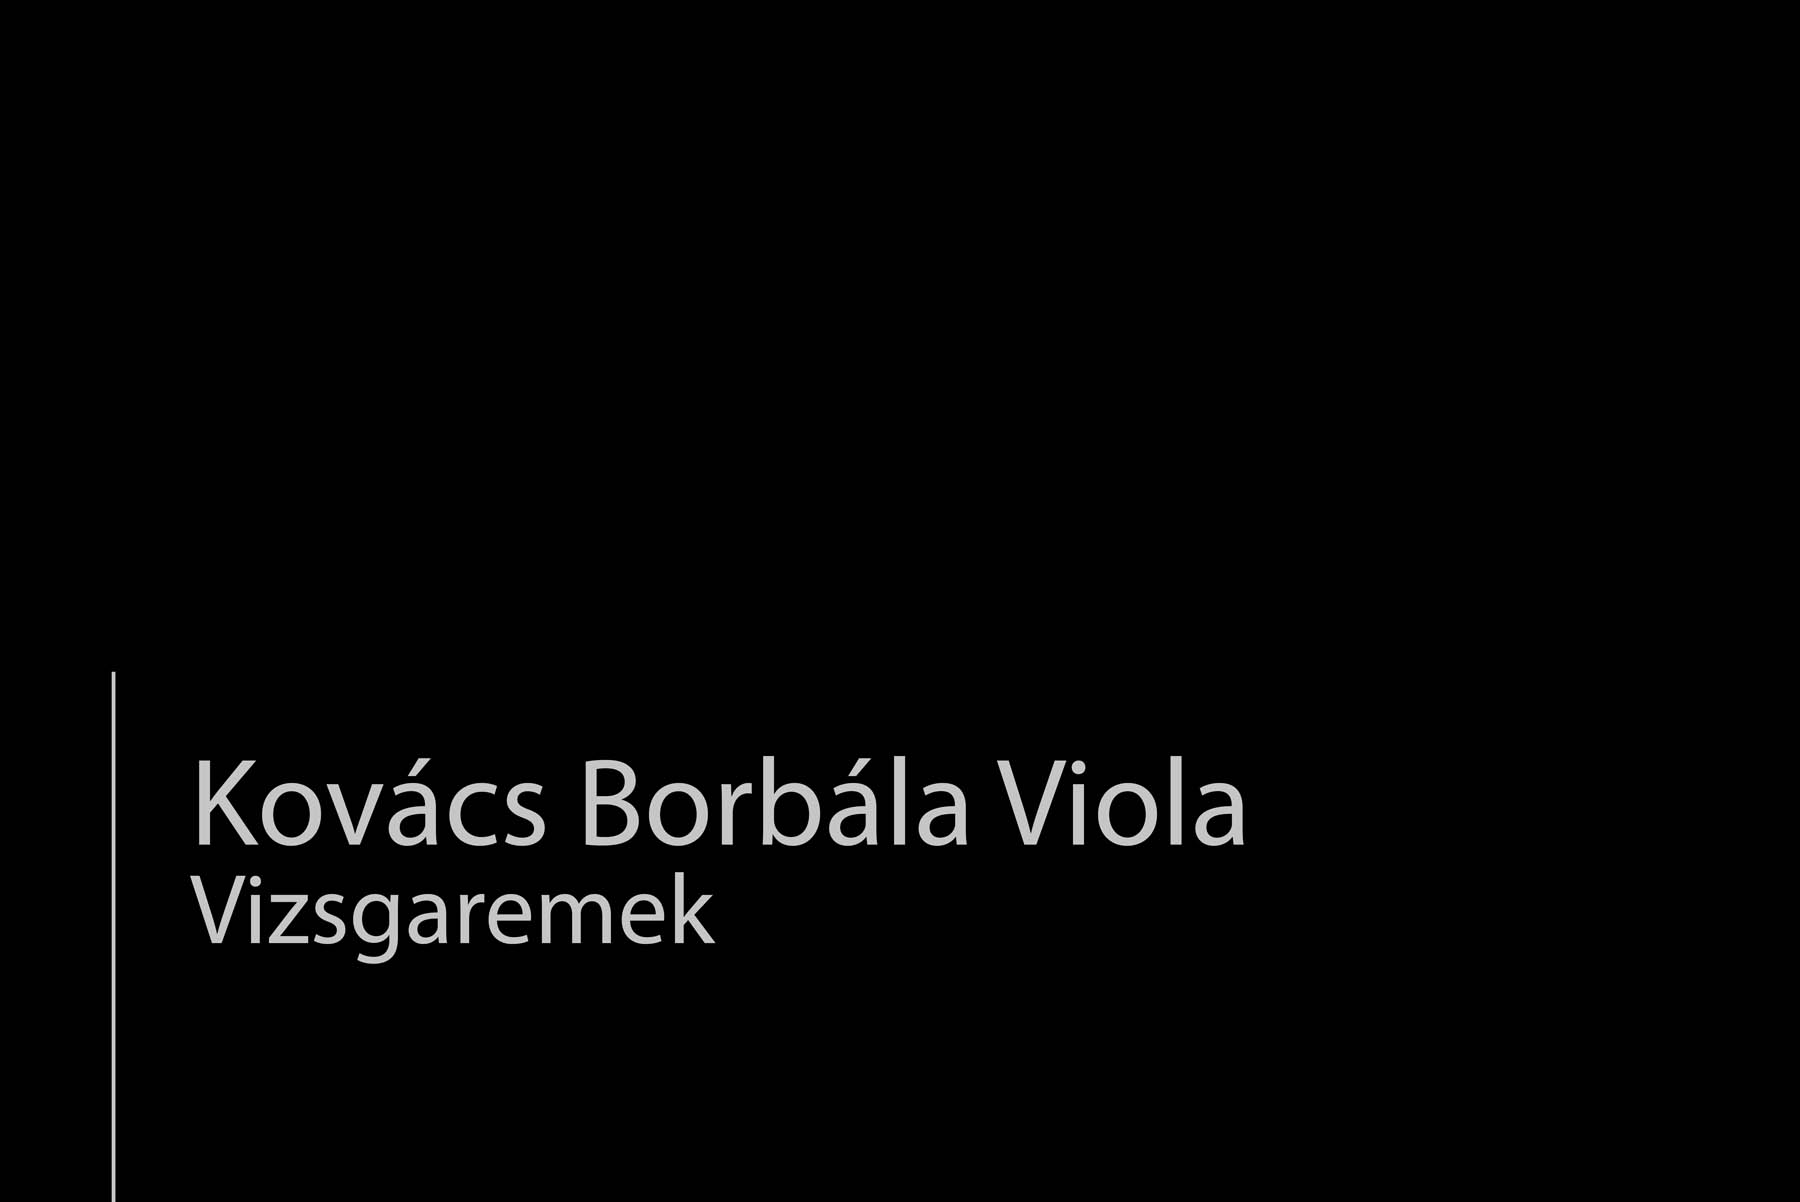 Kovács Borbála fotográfus fotográfus vizsgaremek 